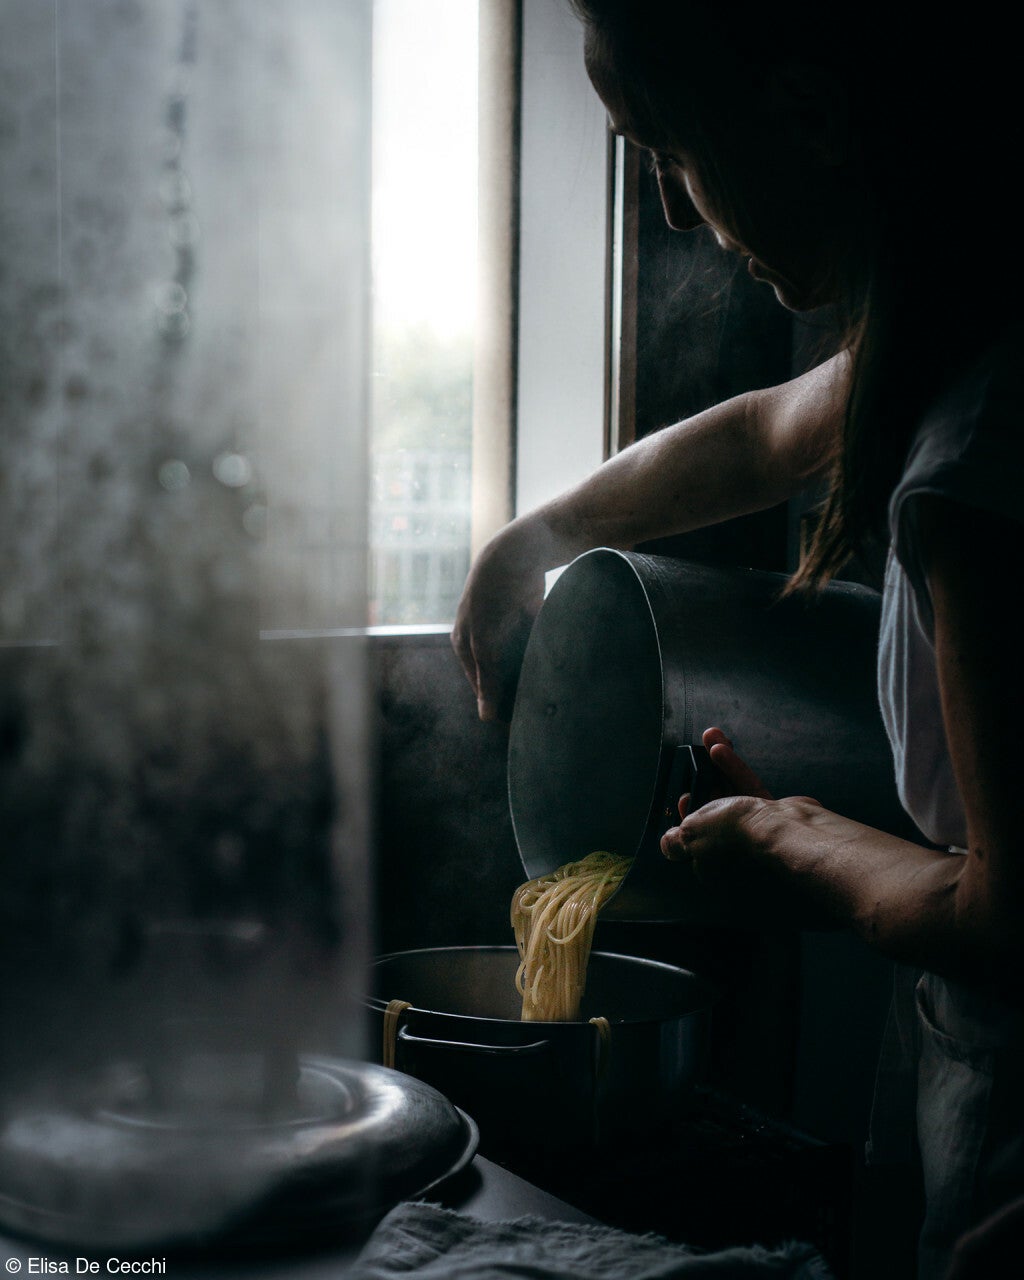 uma pessoa drena macarrão pela janela da cozinha em um dia sombrio e nublado